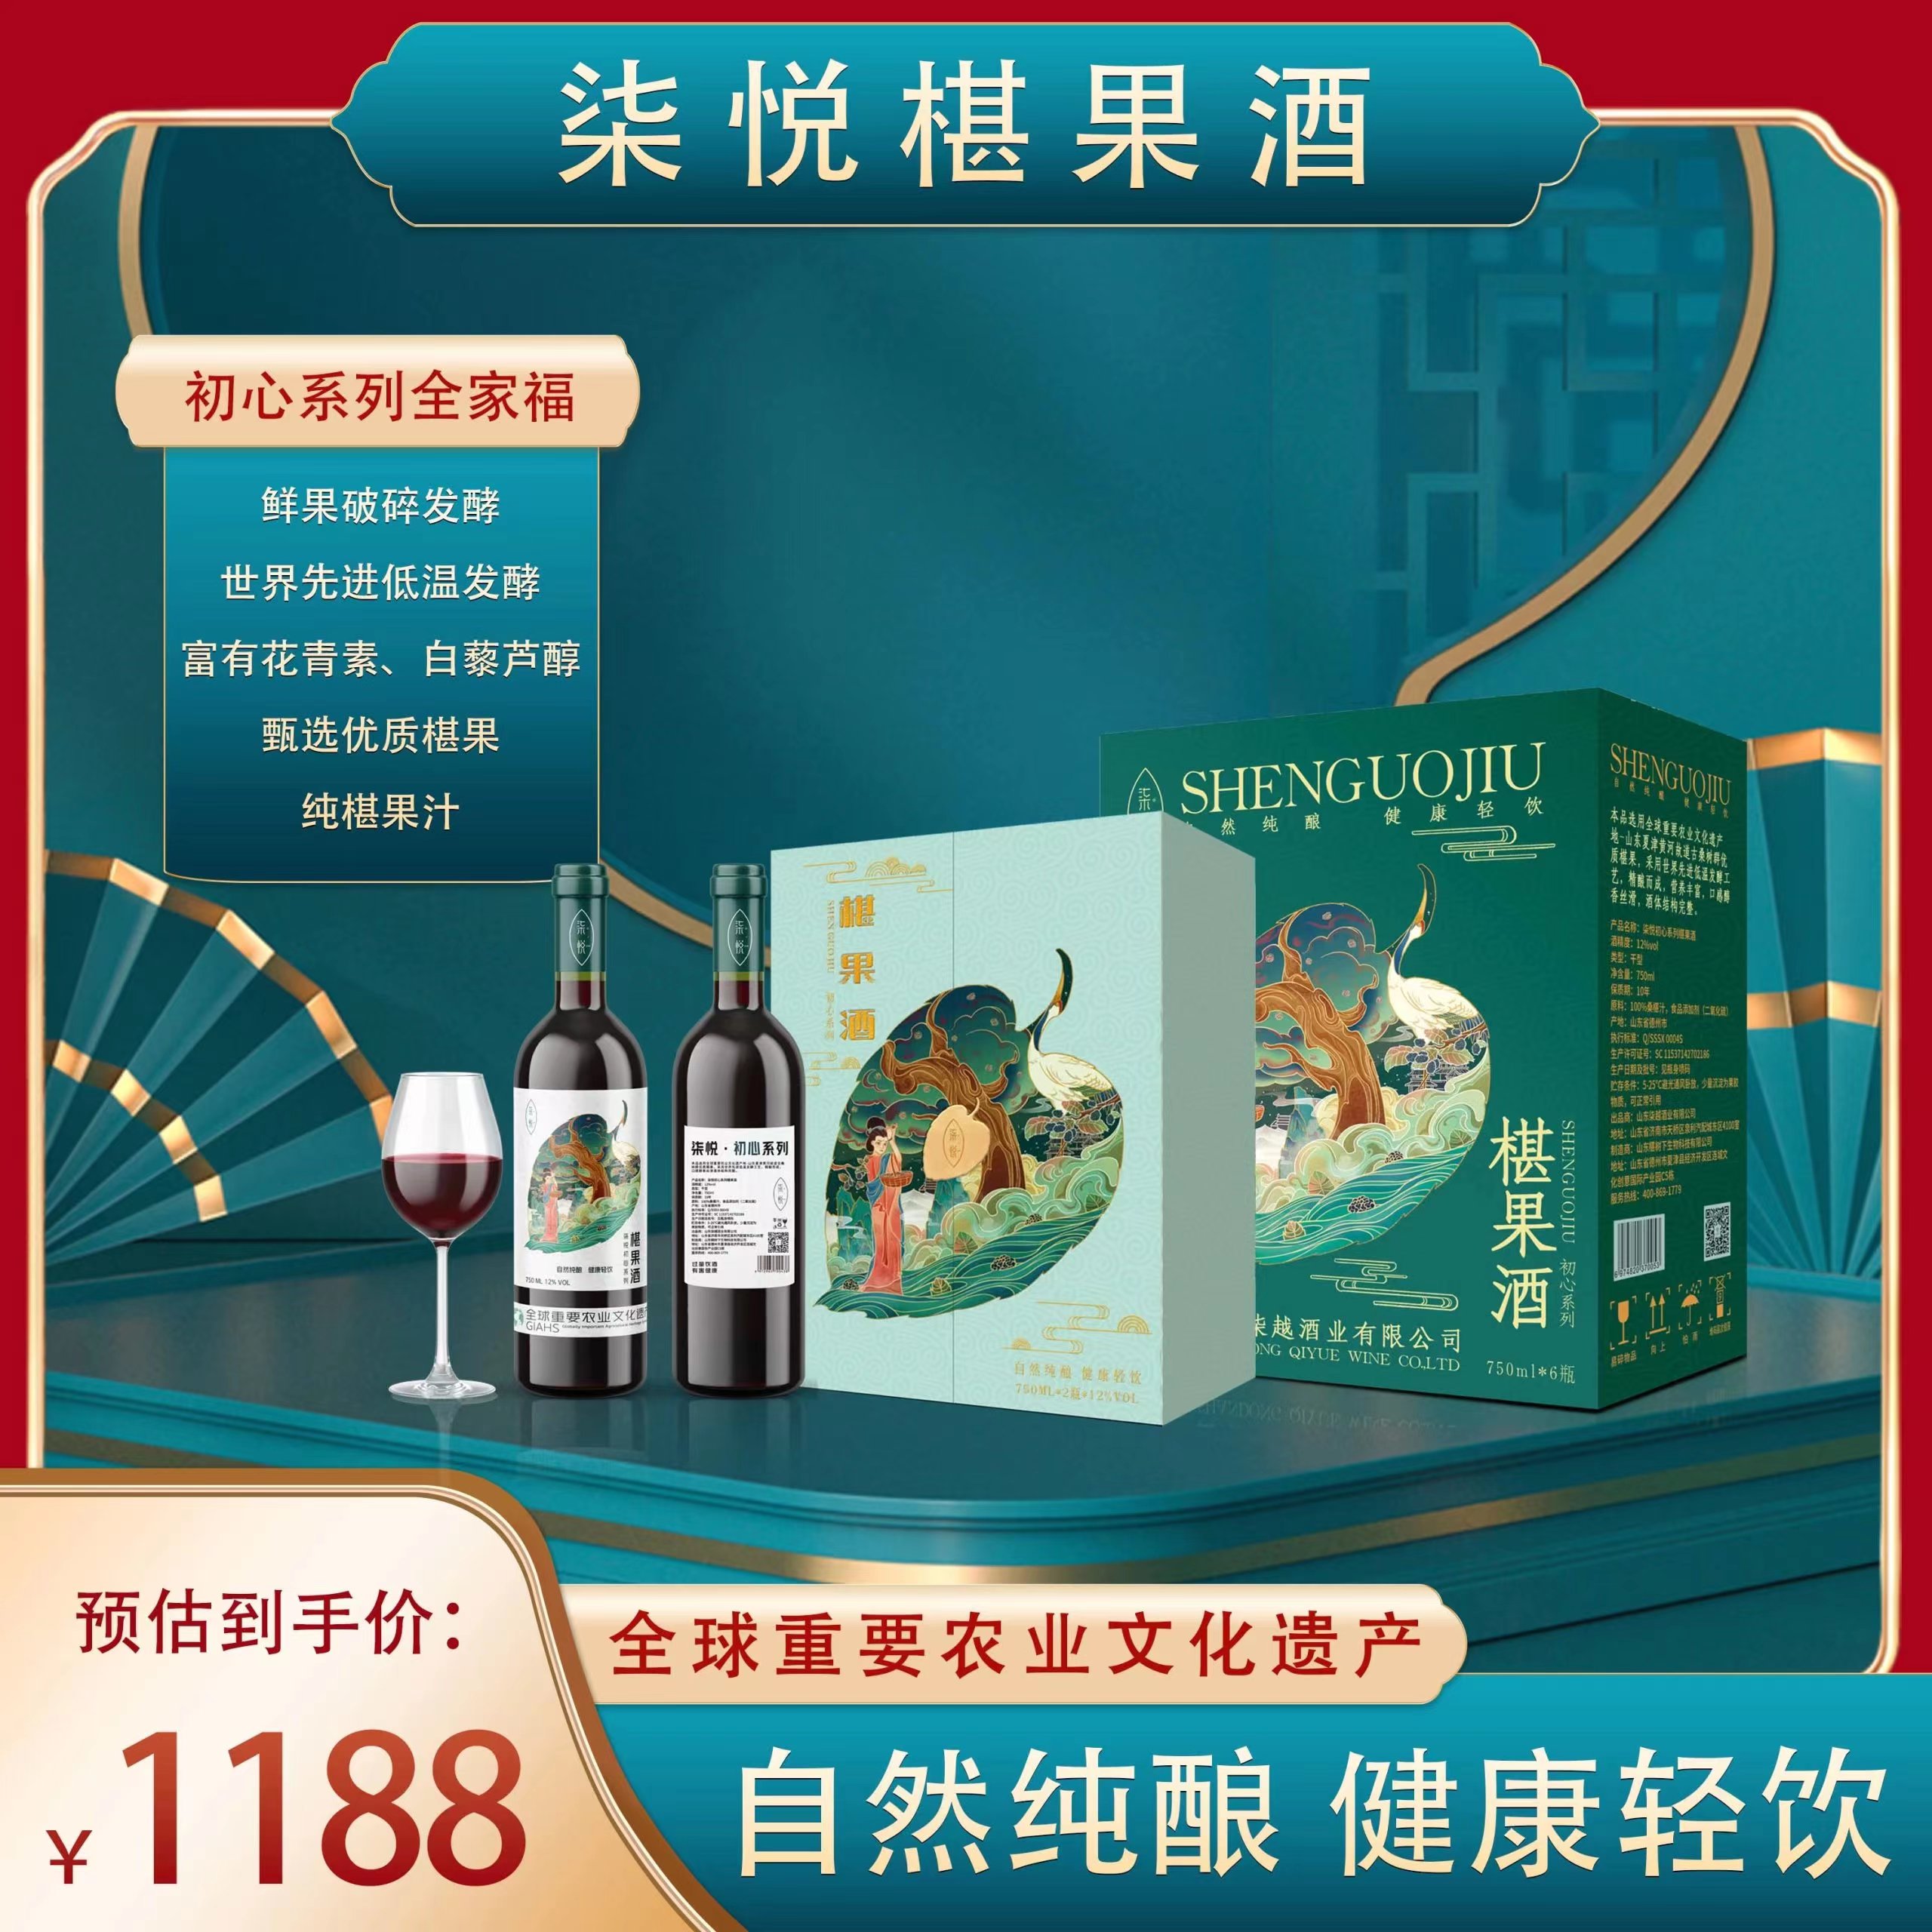 柒悦桑葚酒初心系列 世界文化遗产 12%vol750ml六支箱装包邮 酒类 果酒 原图主图